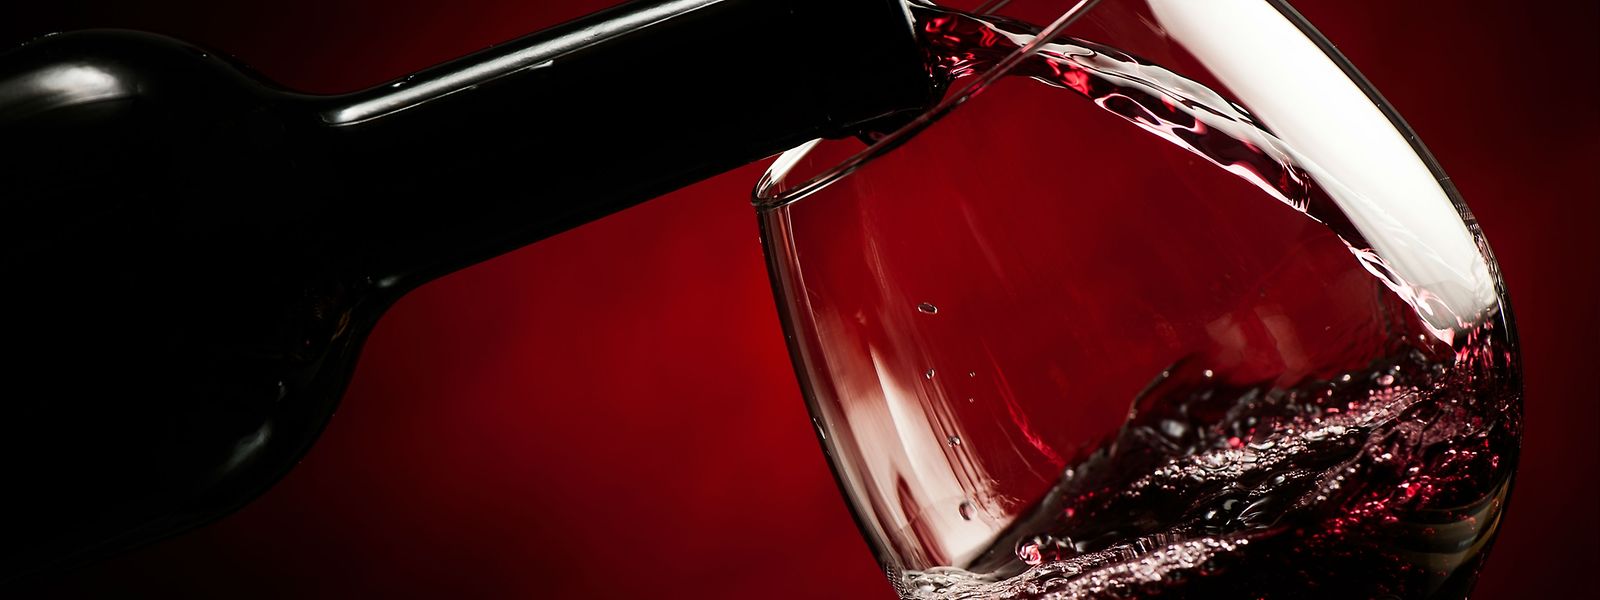 A la question, «quel vin rouge préférez-vous?», 40% des Luxembourgeois ont répondu que le vin français était leur premier choix.